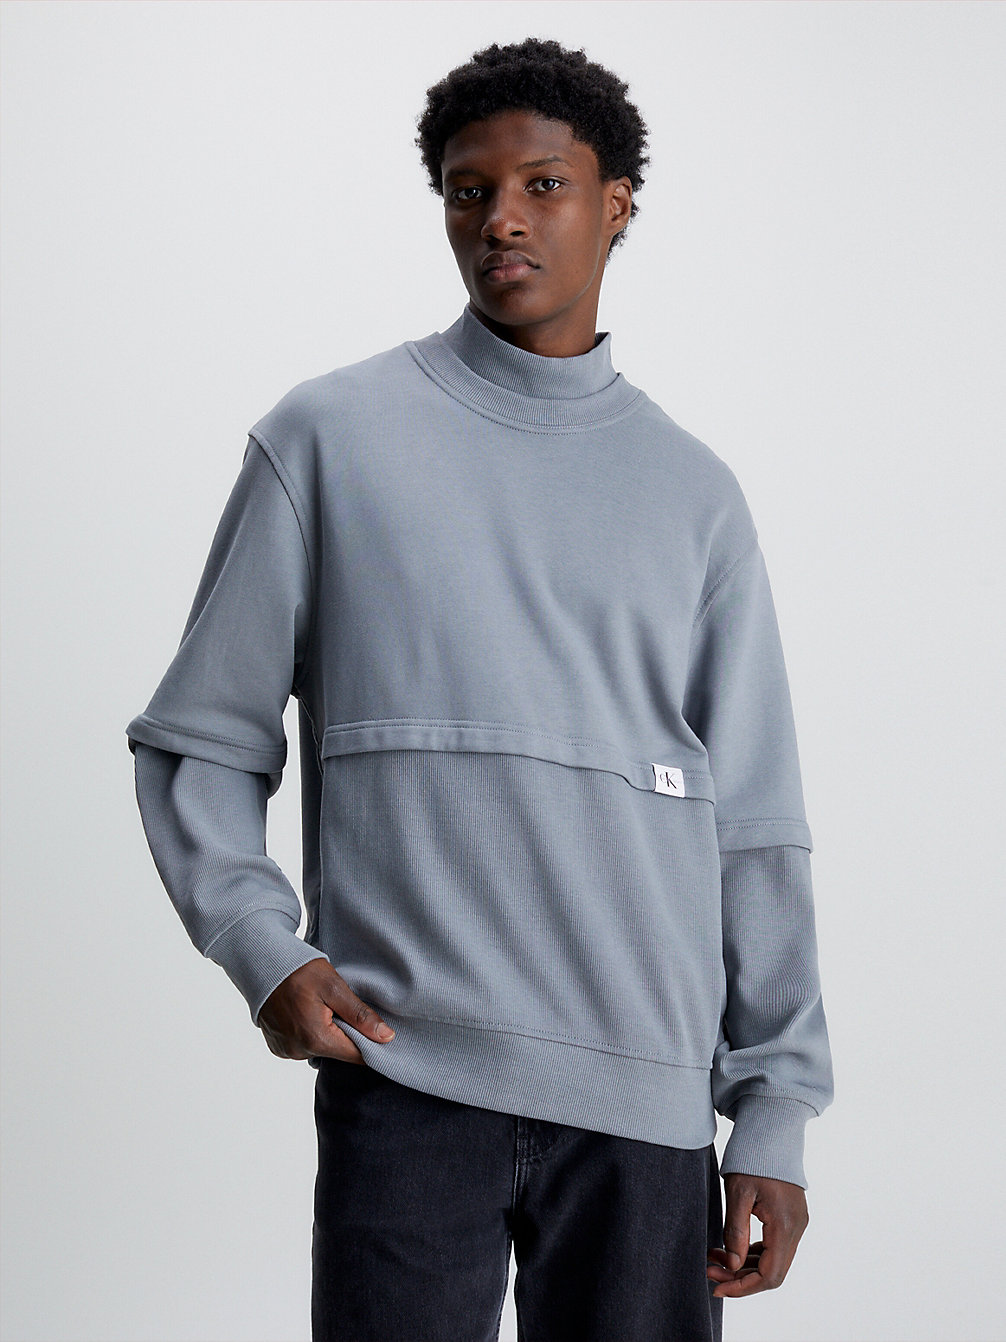 OVERCAST GREY > Lässiges Sweatshirt Aus Materialmix > undefined men - Calvin Klein